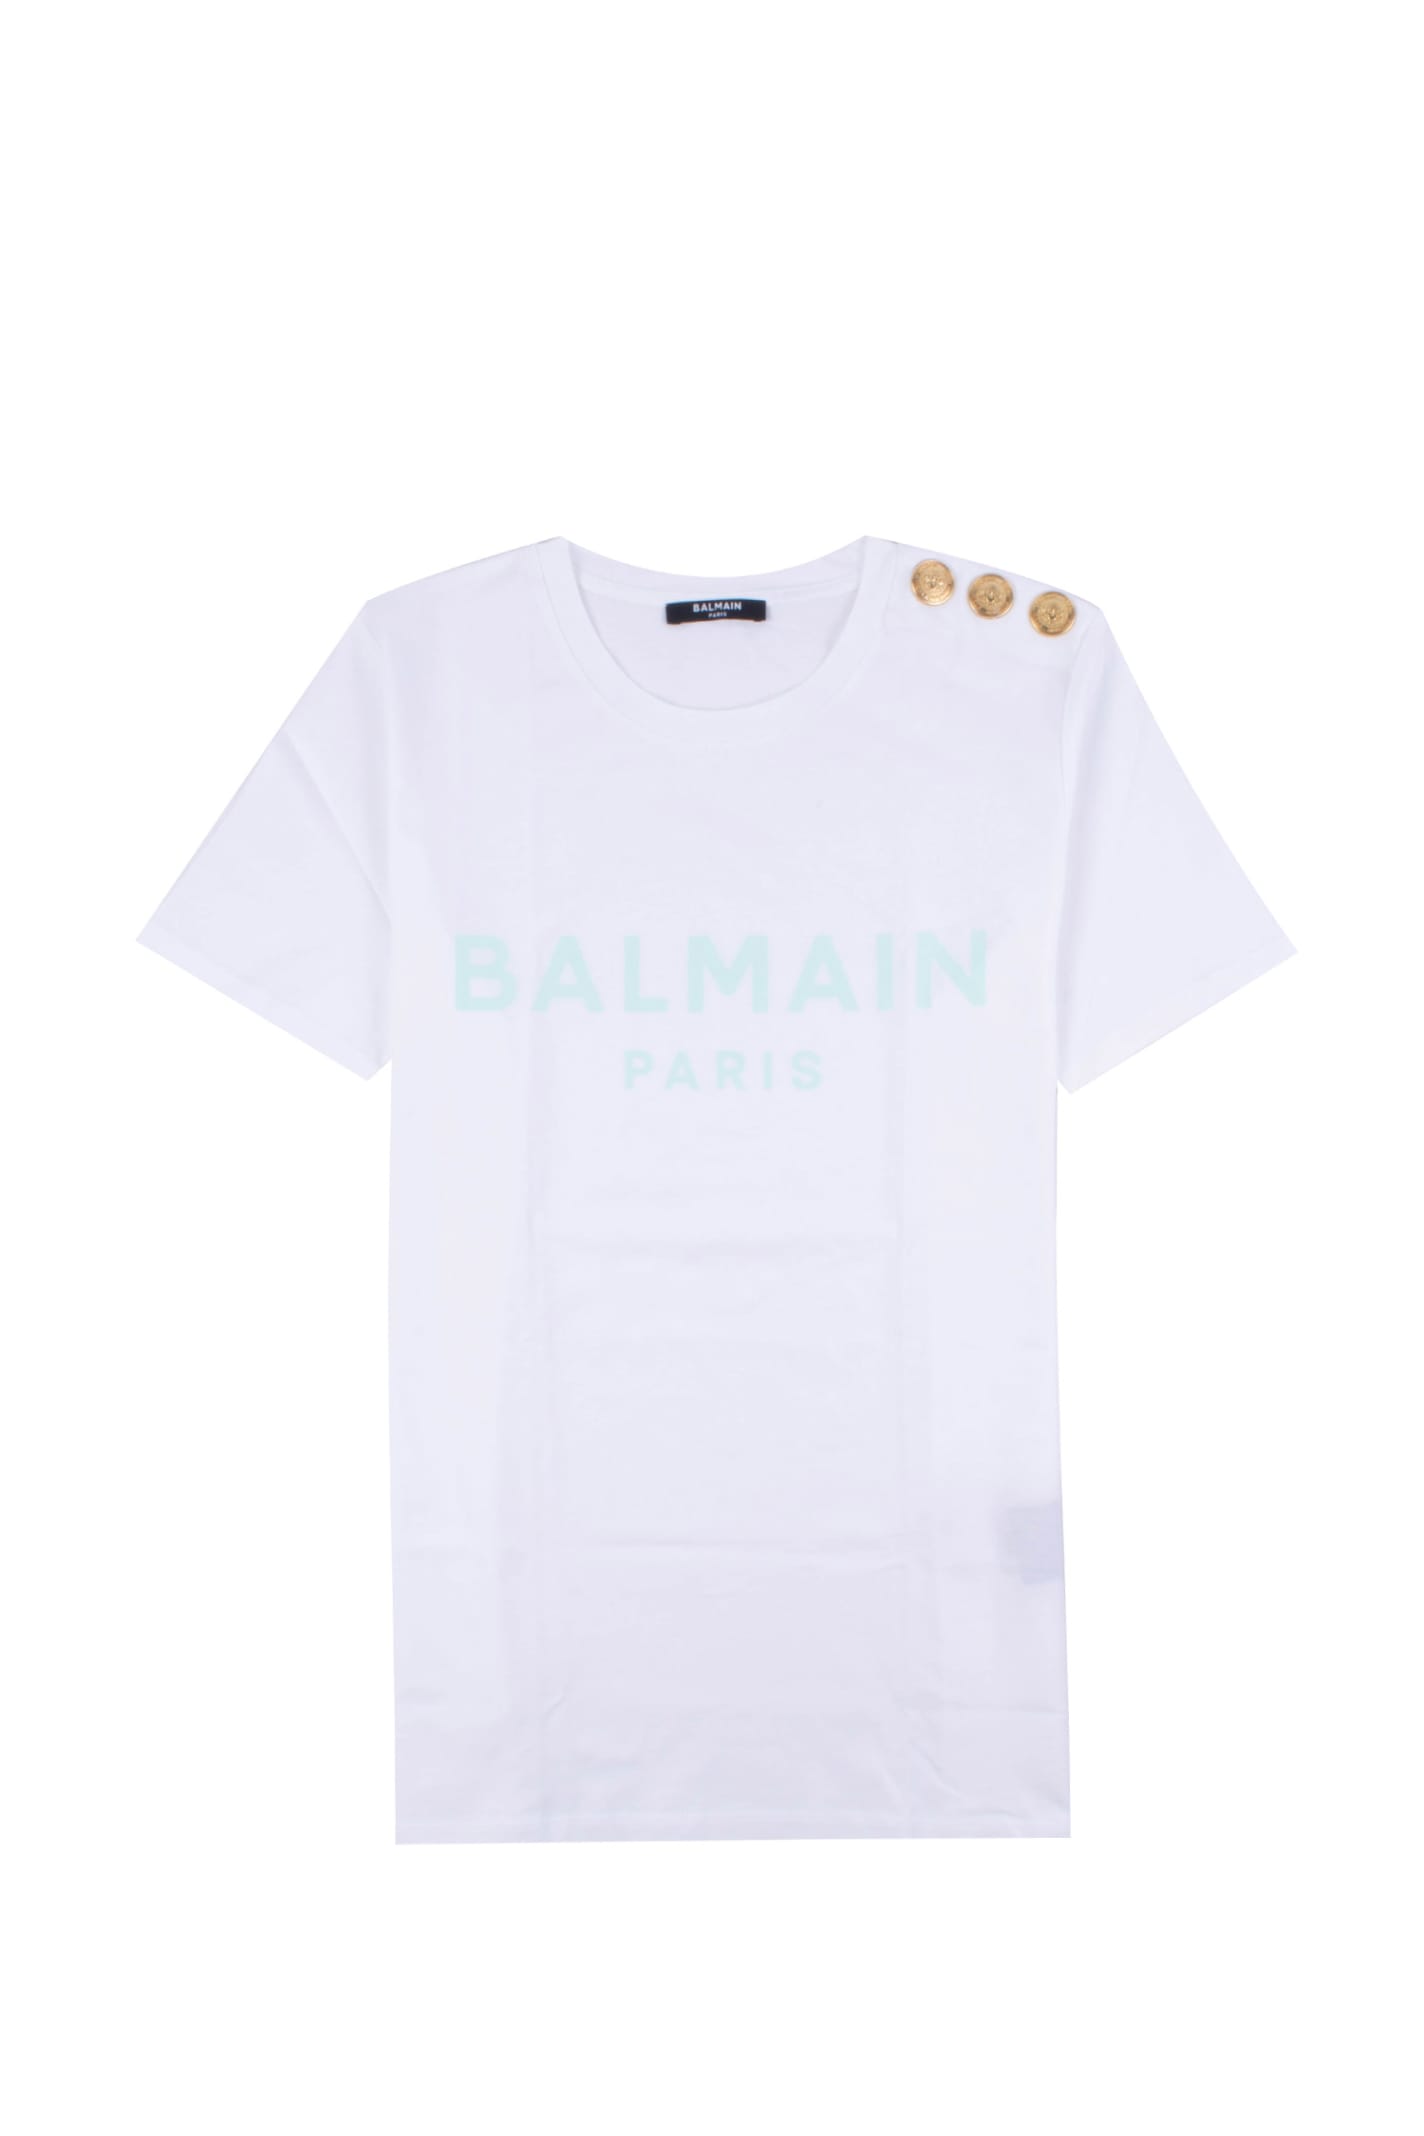 White Cotton T-shirt With Balmain Logo